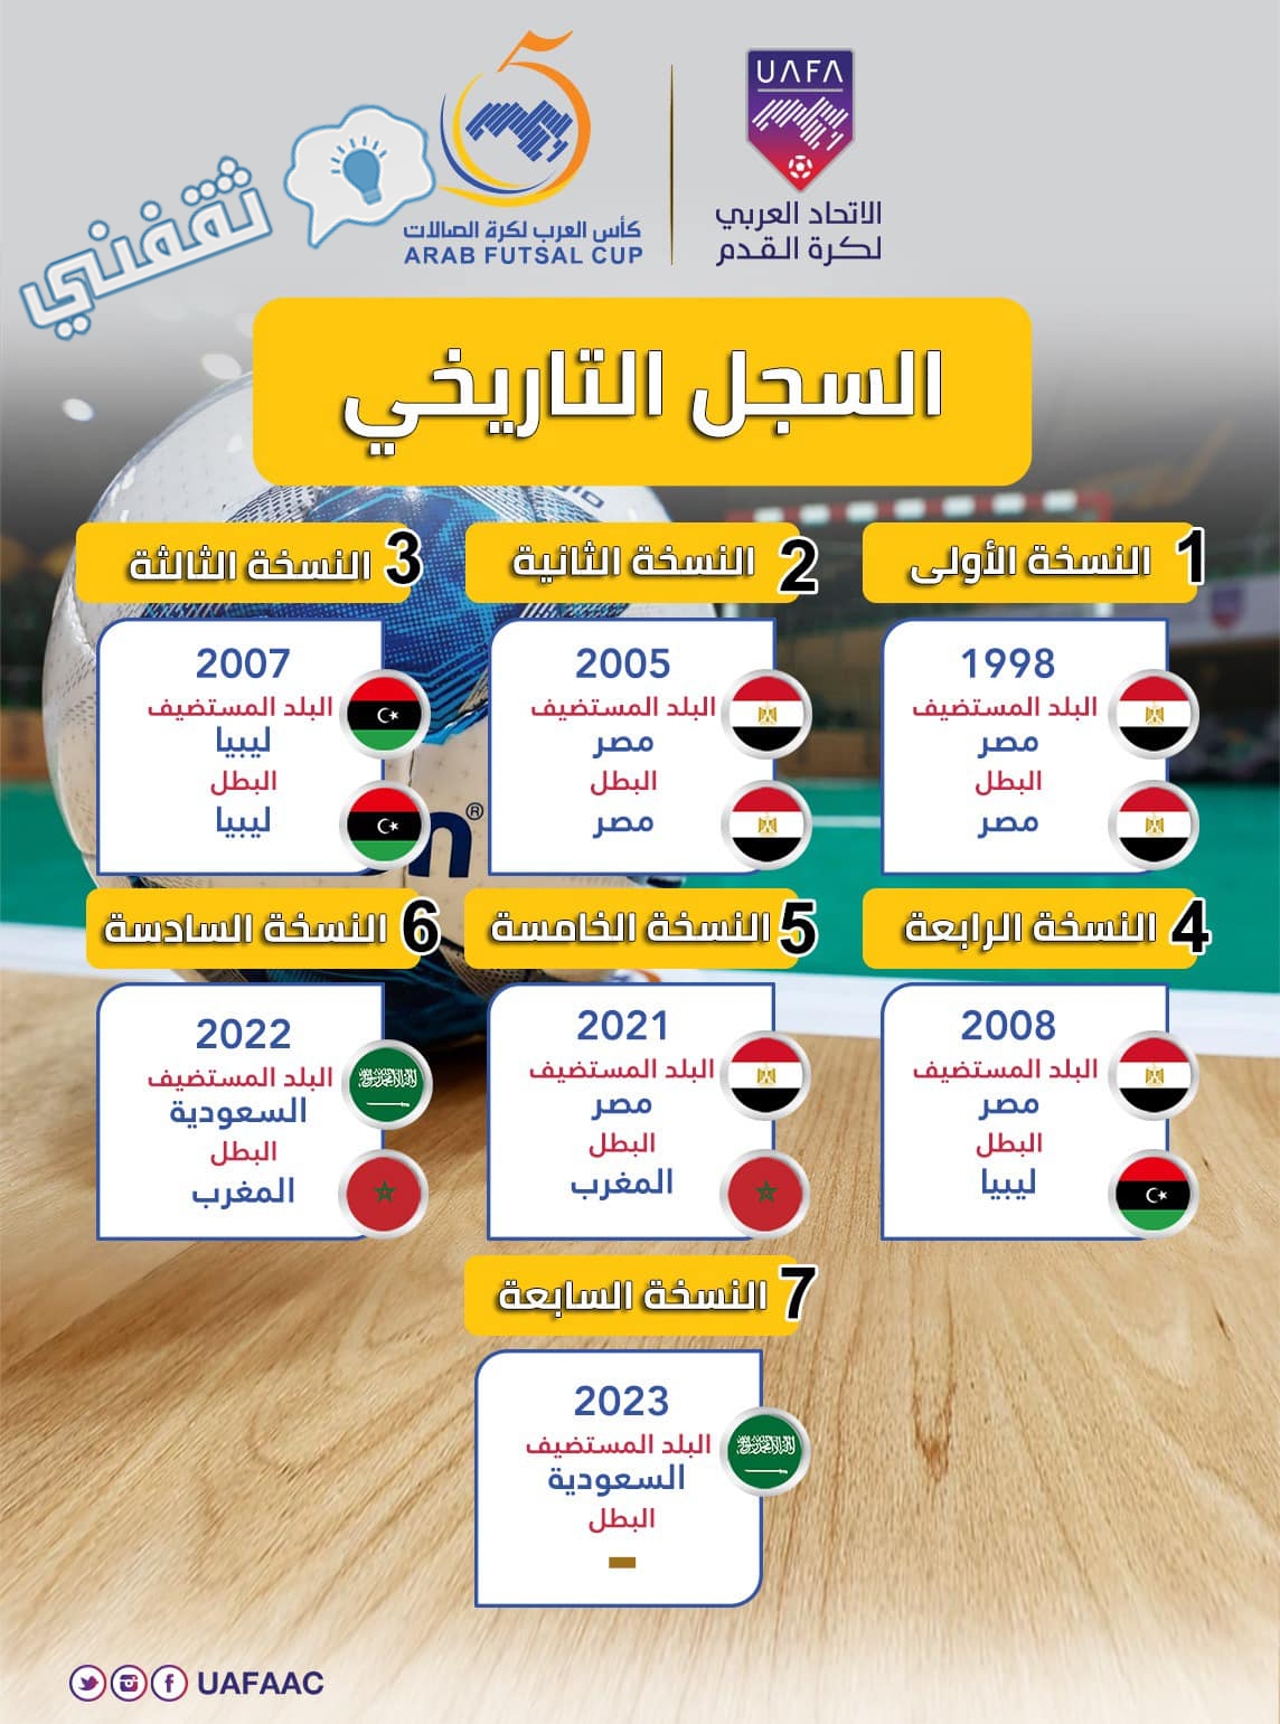 السجل التاريخي للمنتخبات المتوجة بلقب كأس العرب للصالات